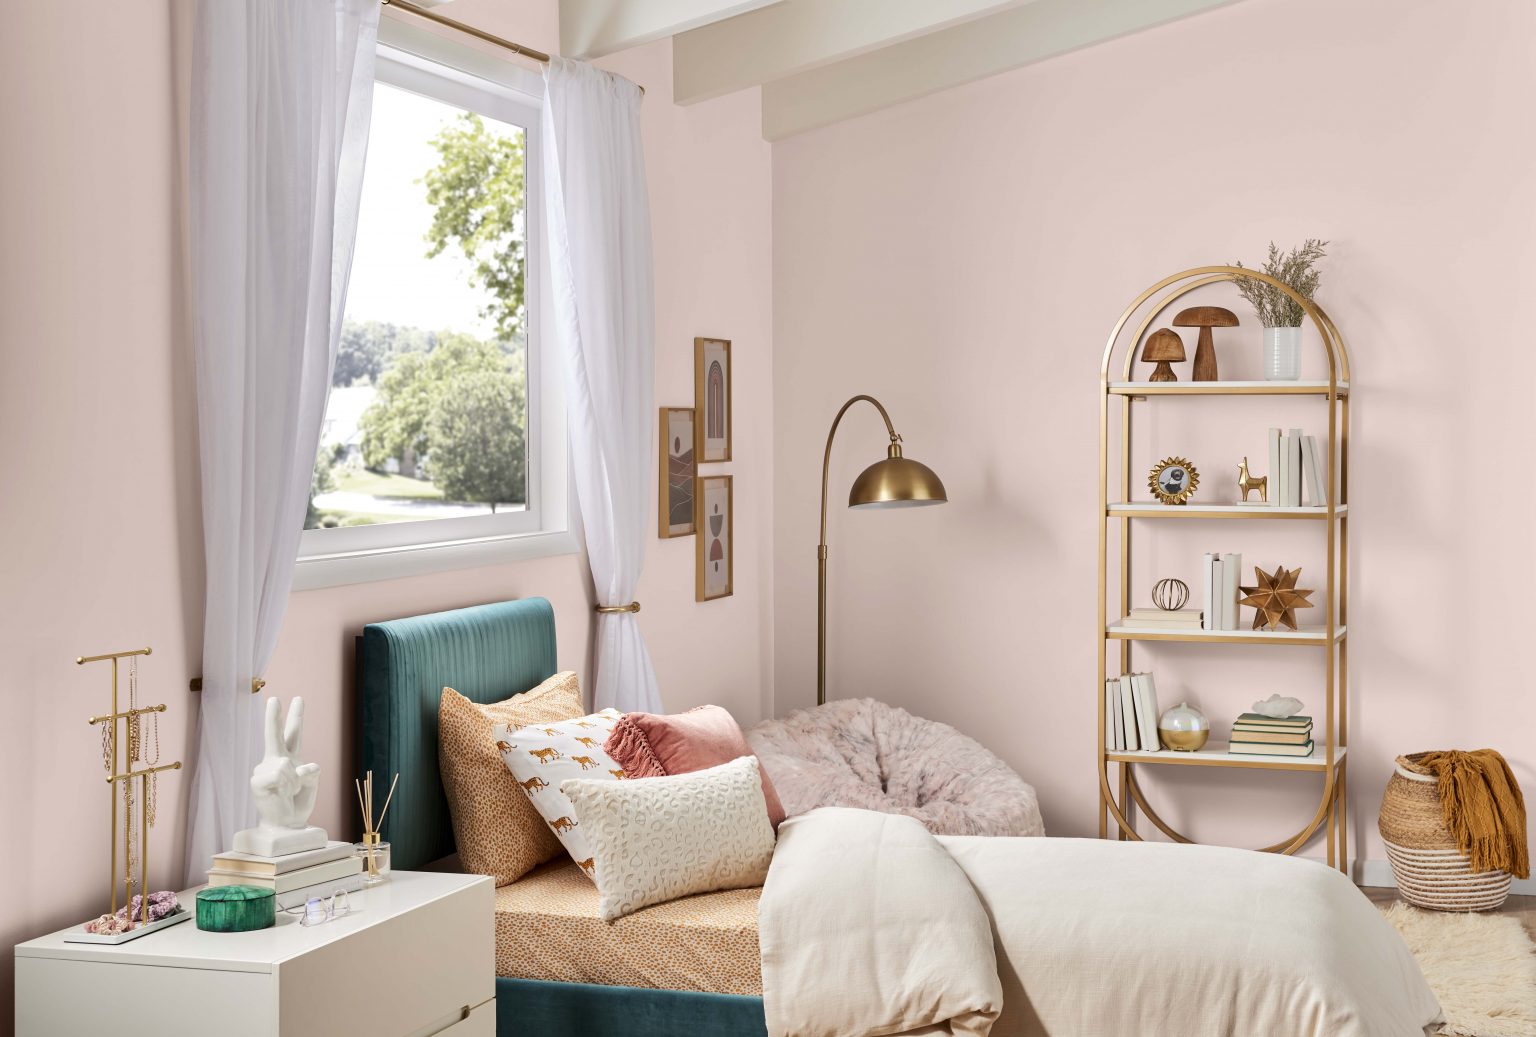 Une chambre d'adolescent avec des murs peints dans une couleur rose clair neutre, stylisée avec des accents décoratifs neutres et or métallique